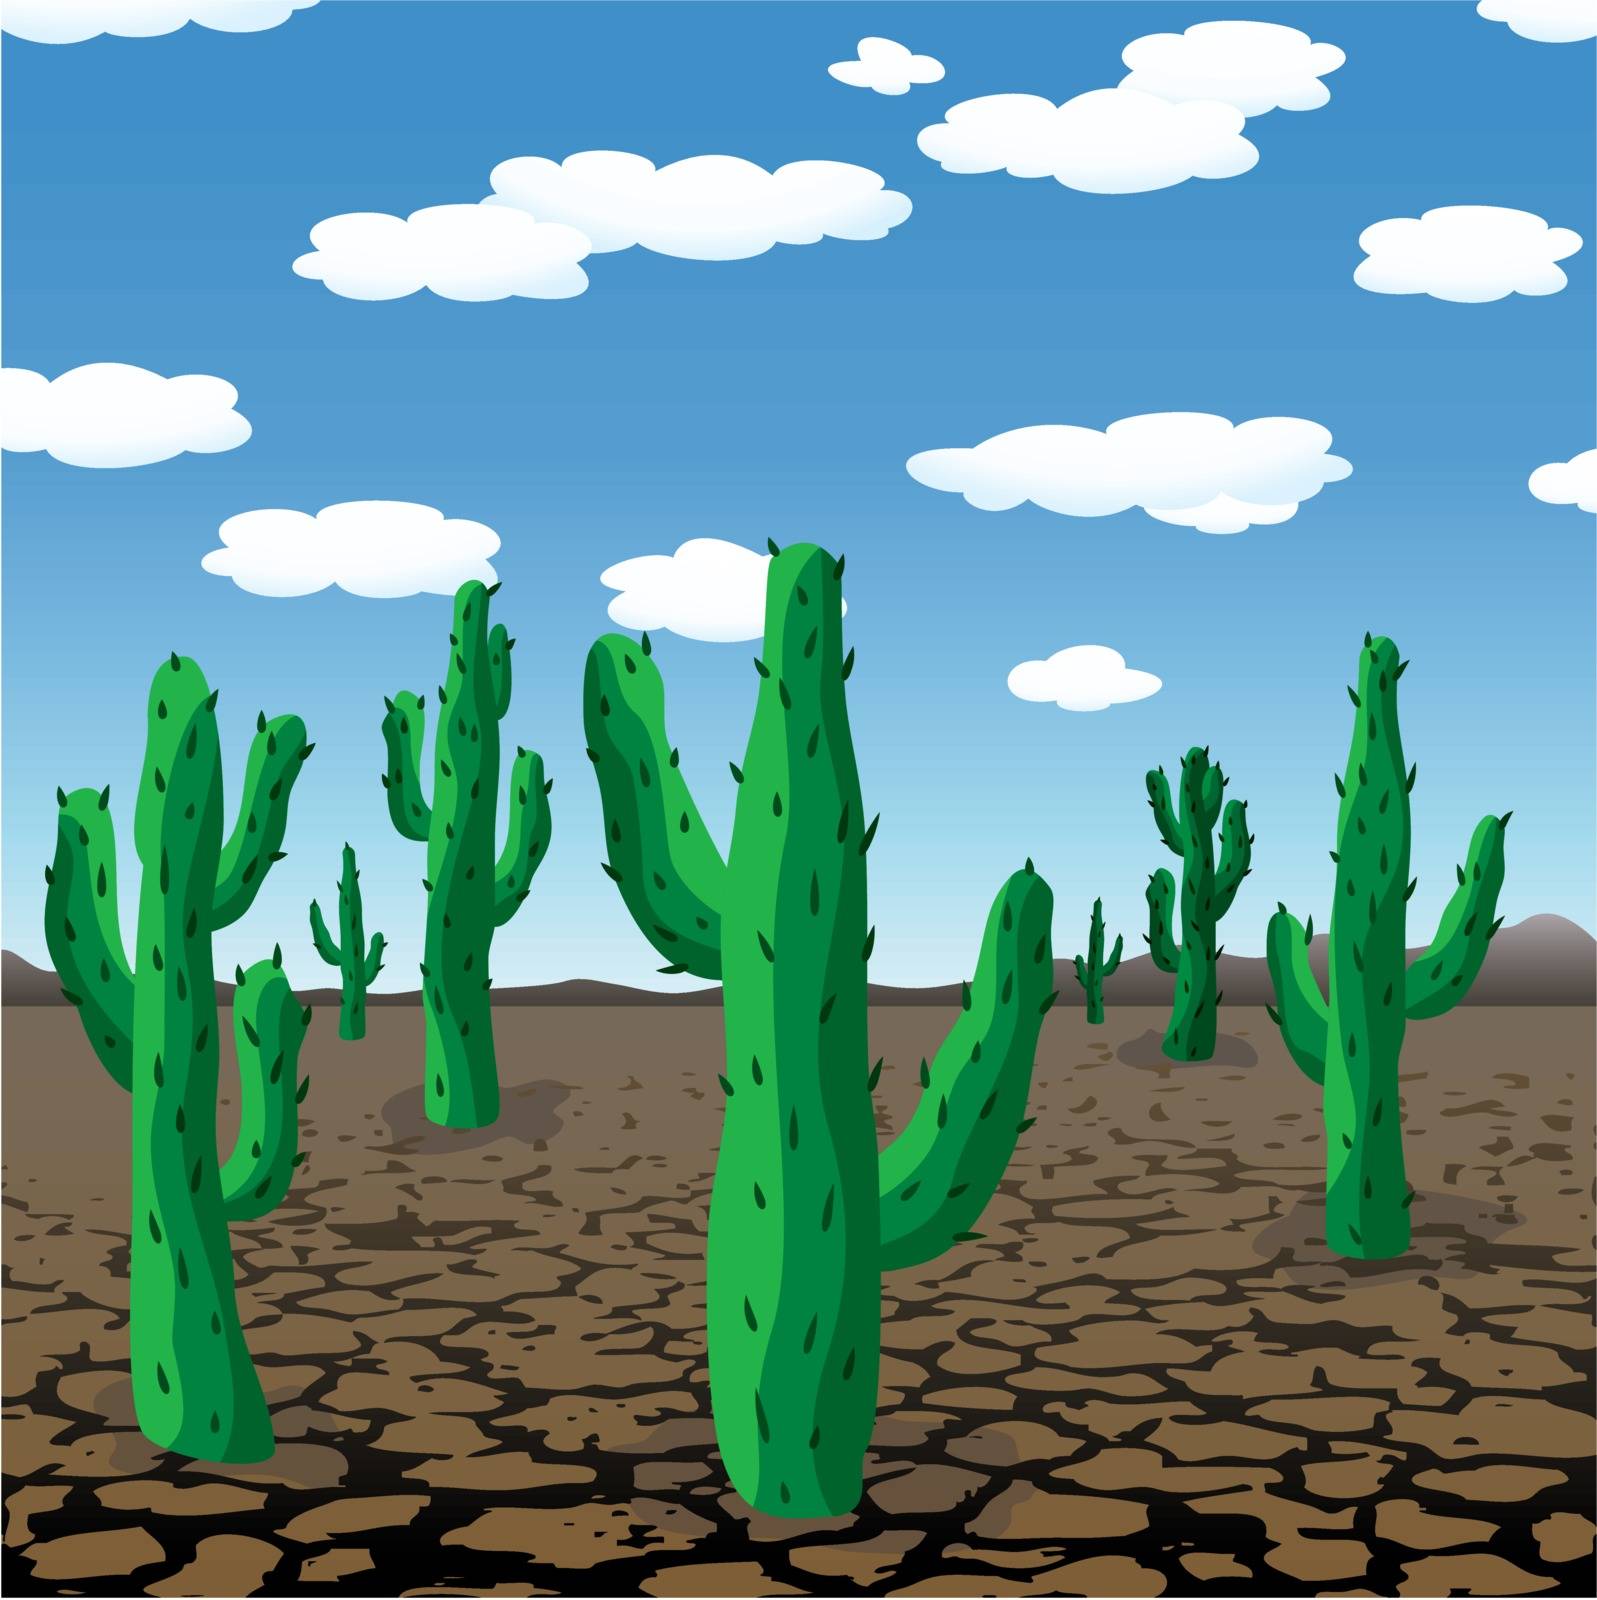 vector illustration of cactuses in dry desert